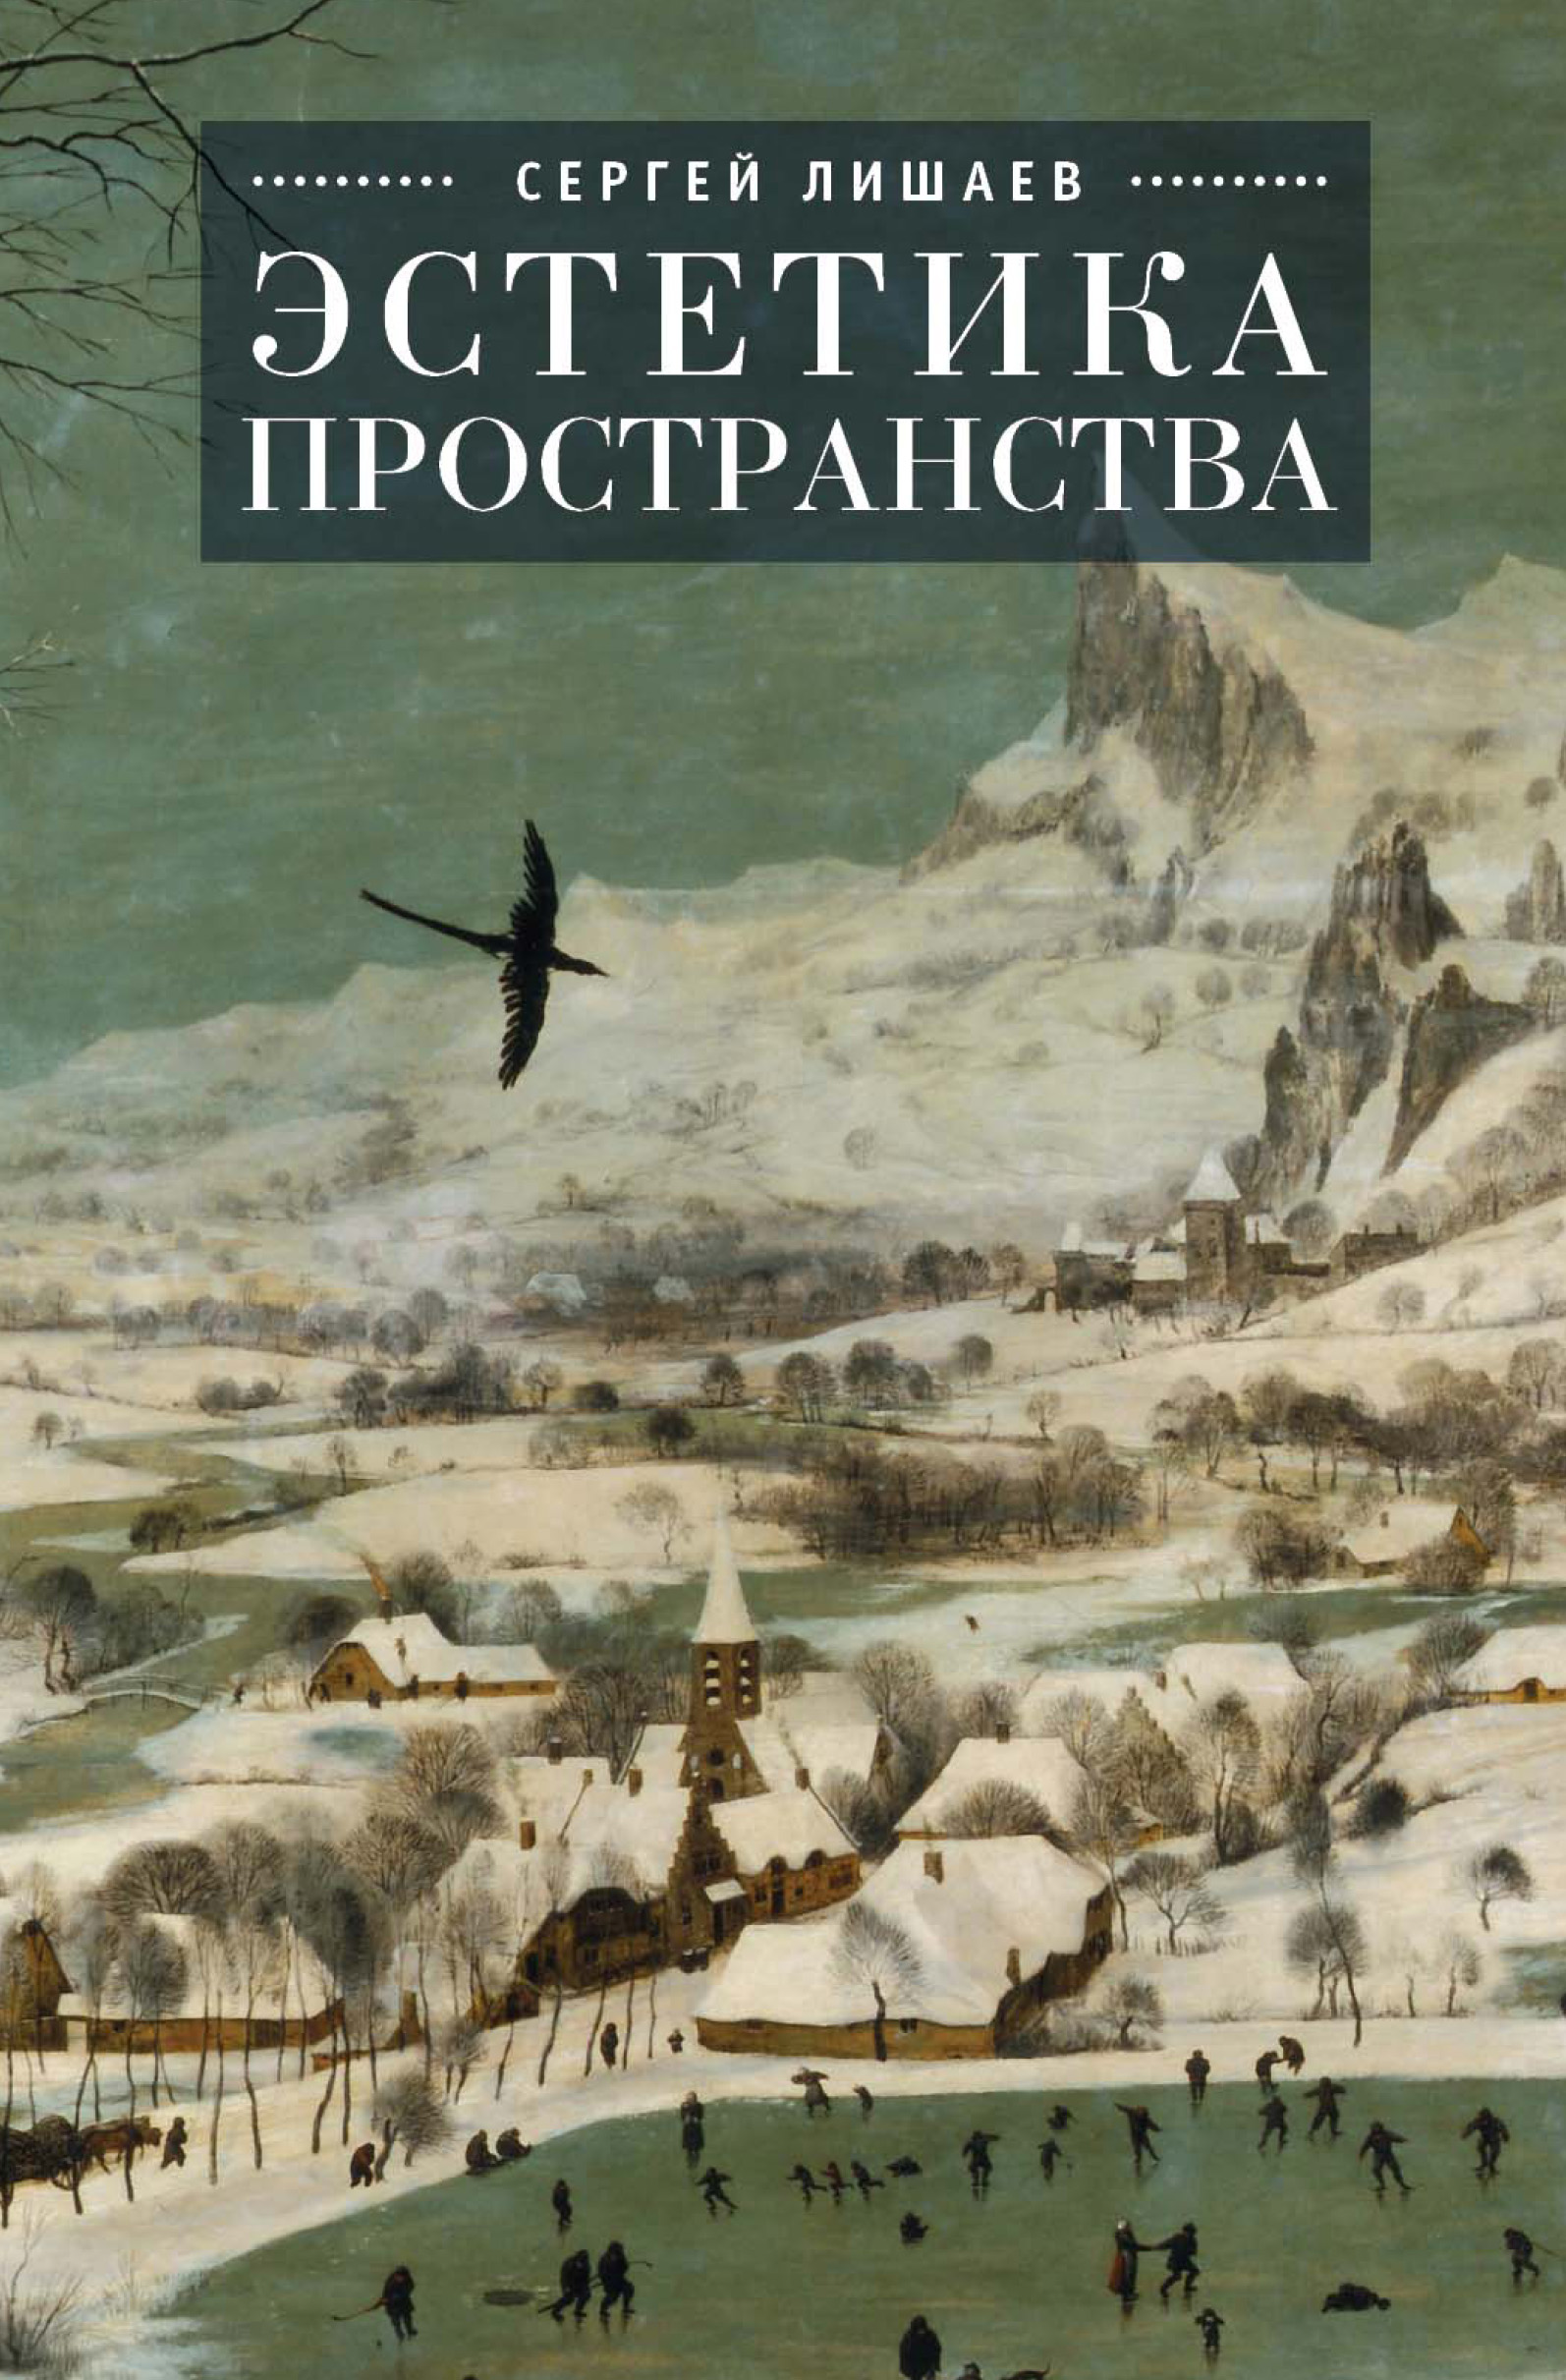 Книга Эстетика пространства из серии , созданная Сергей Лишаев, может относится к жанру Философия, Культурология. Стоимость книги Эстетика пространства  с идентификатором 11961827 составляет 299.00 руб.